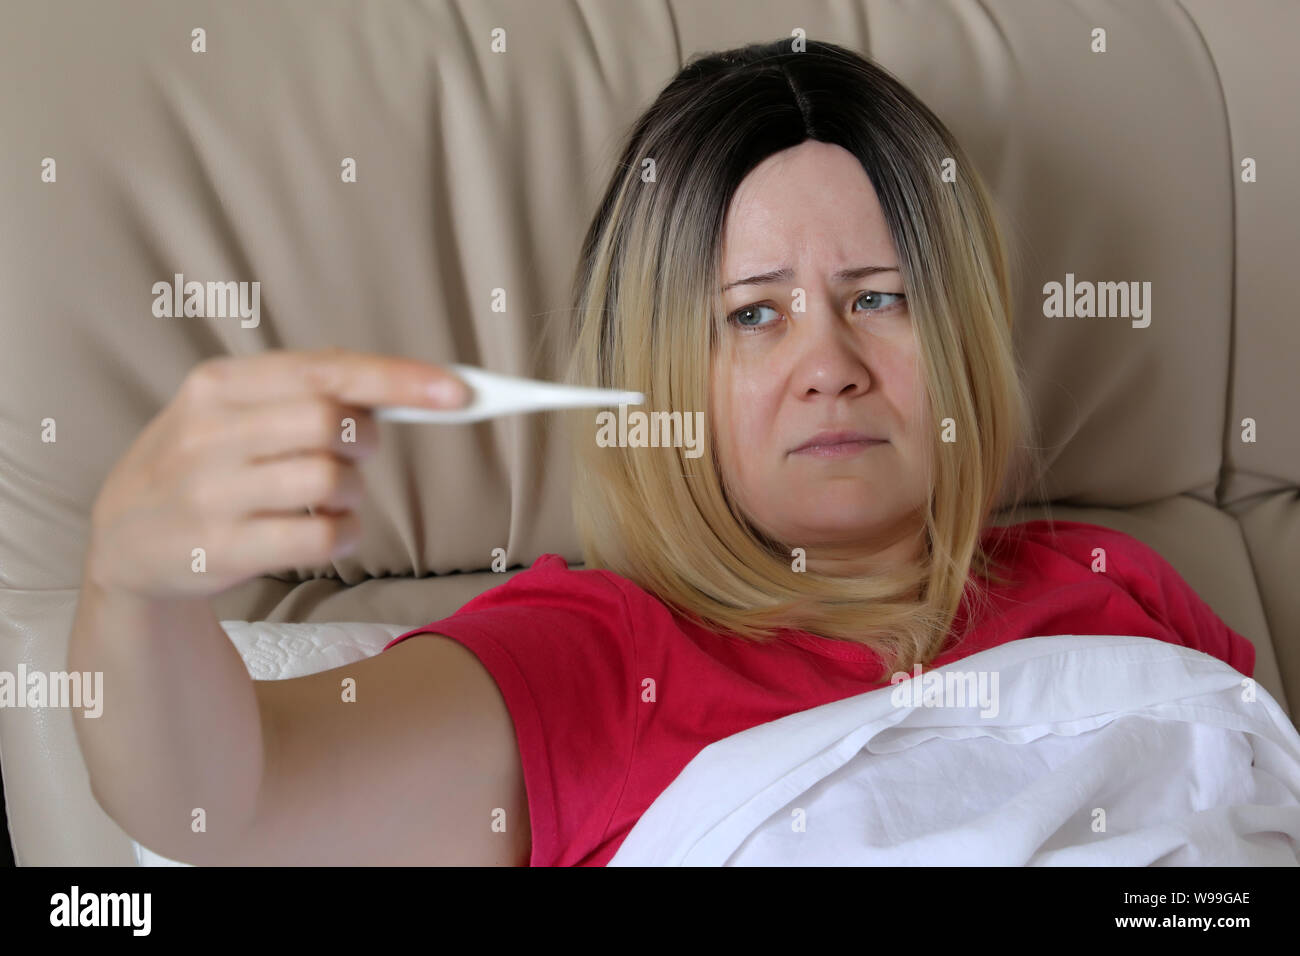 La mesure de la température du corps malade couché dans un lit, une main de femme dans le thermomètre numérique. Concept de la fièvre, le rhume et la grippe, la maladie, la douleur de tête Banque D'Images